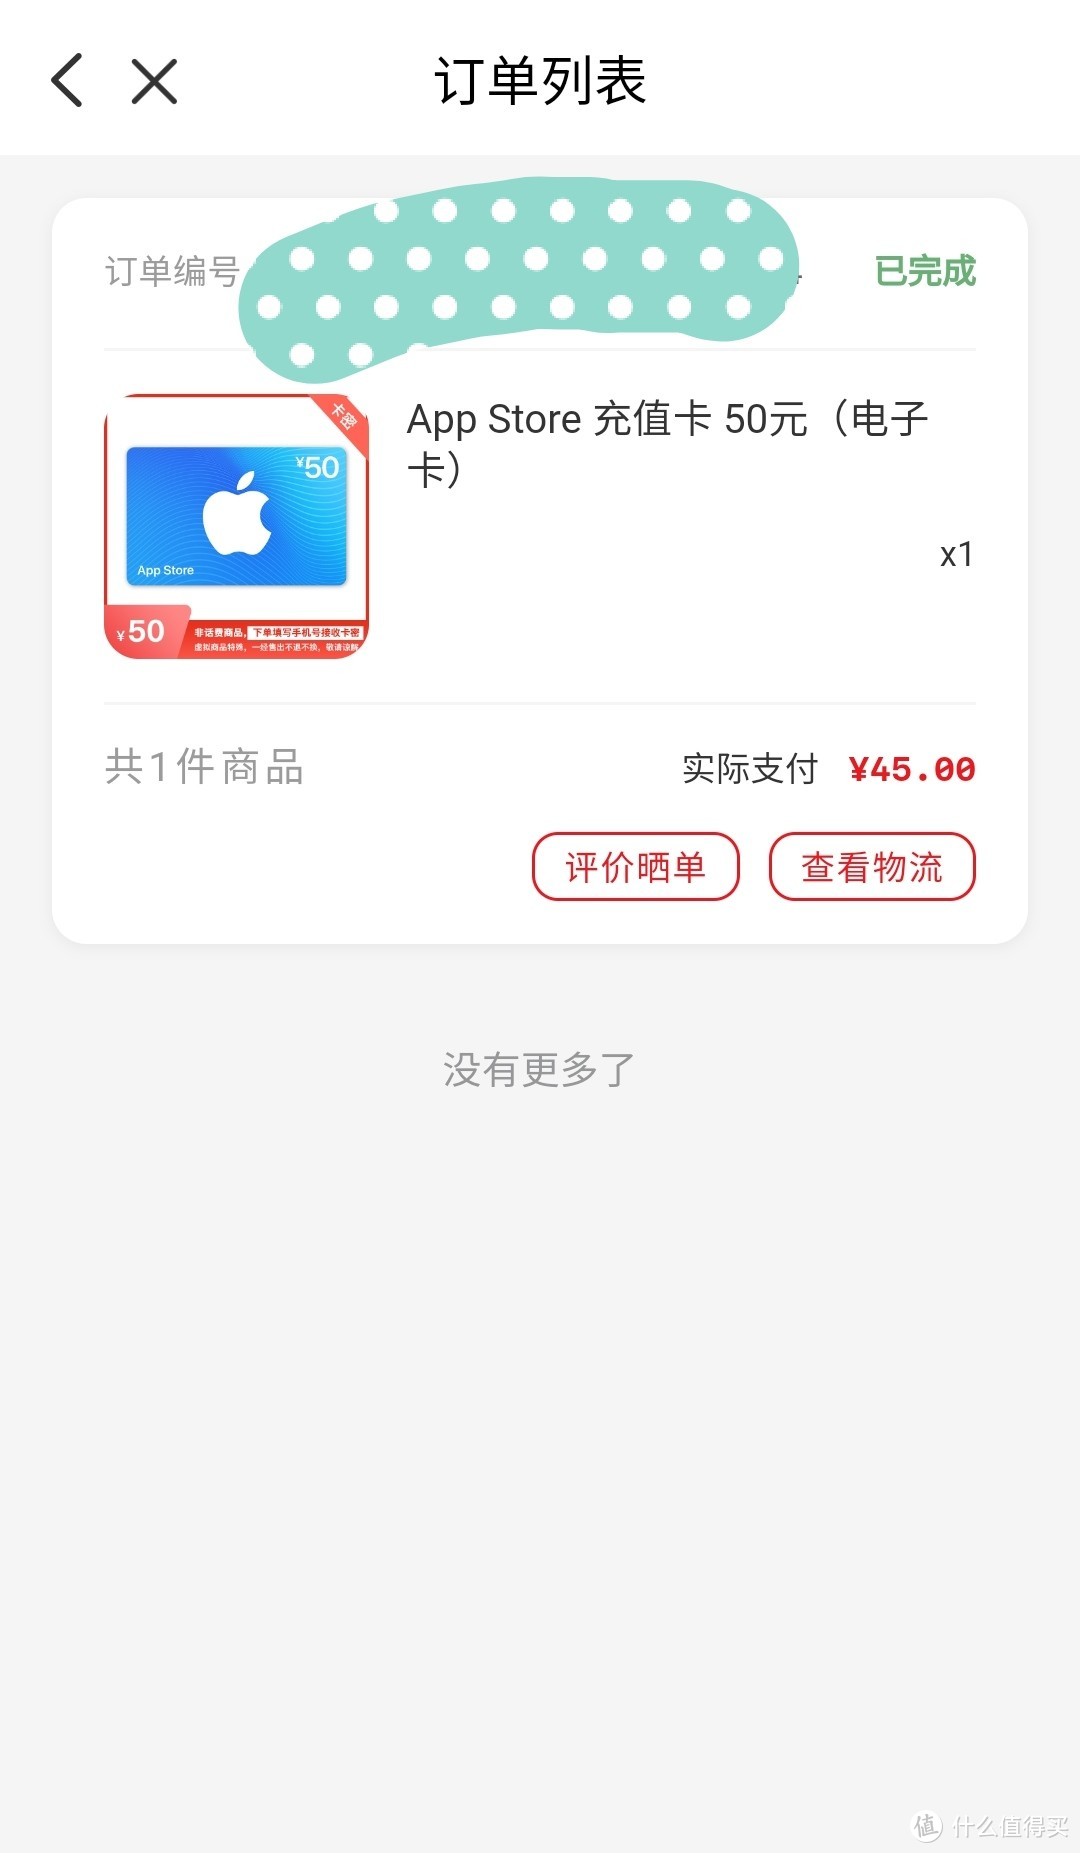 9折优惠App Store充值卡，云闪付重磅活动特惠虚拟充值节